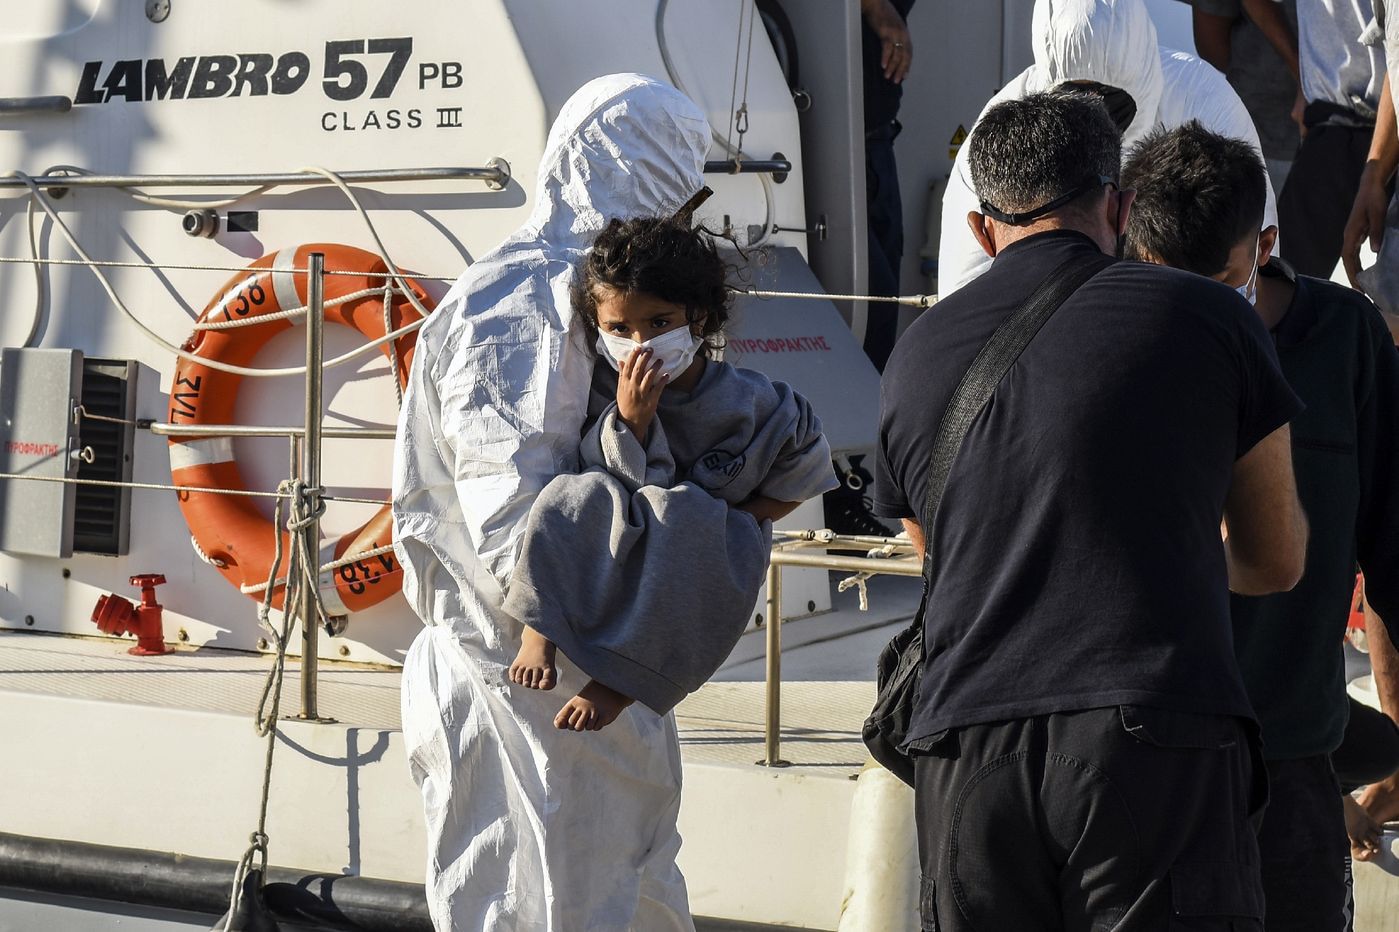 Des réfugiés et des migrants secourus débarquent d'un navire des garde-côtes grecs dans le port d'Ierapetra, sur l'île de Crète, le 23 juillet 2021 / AFP/Archives